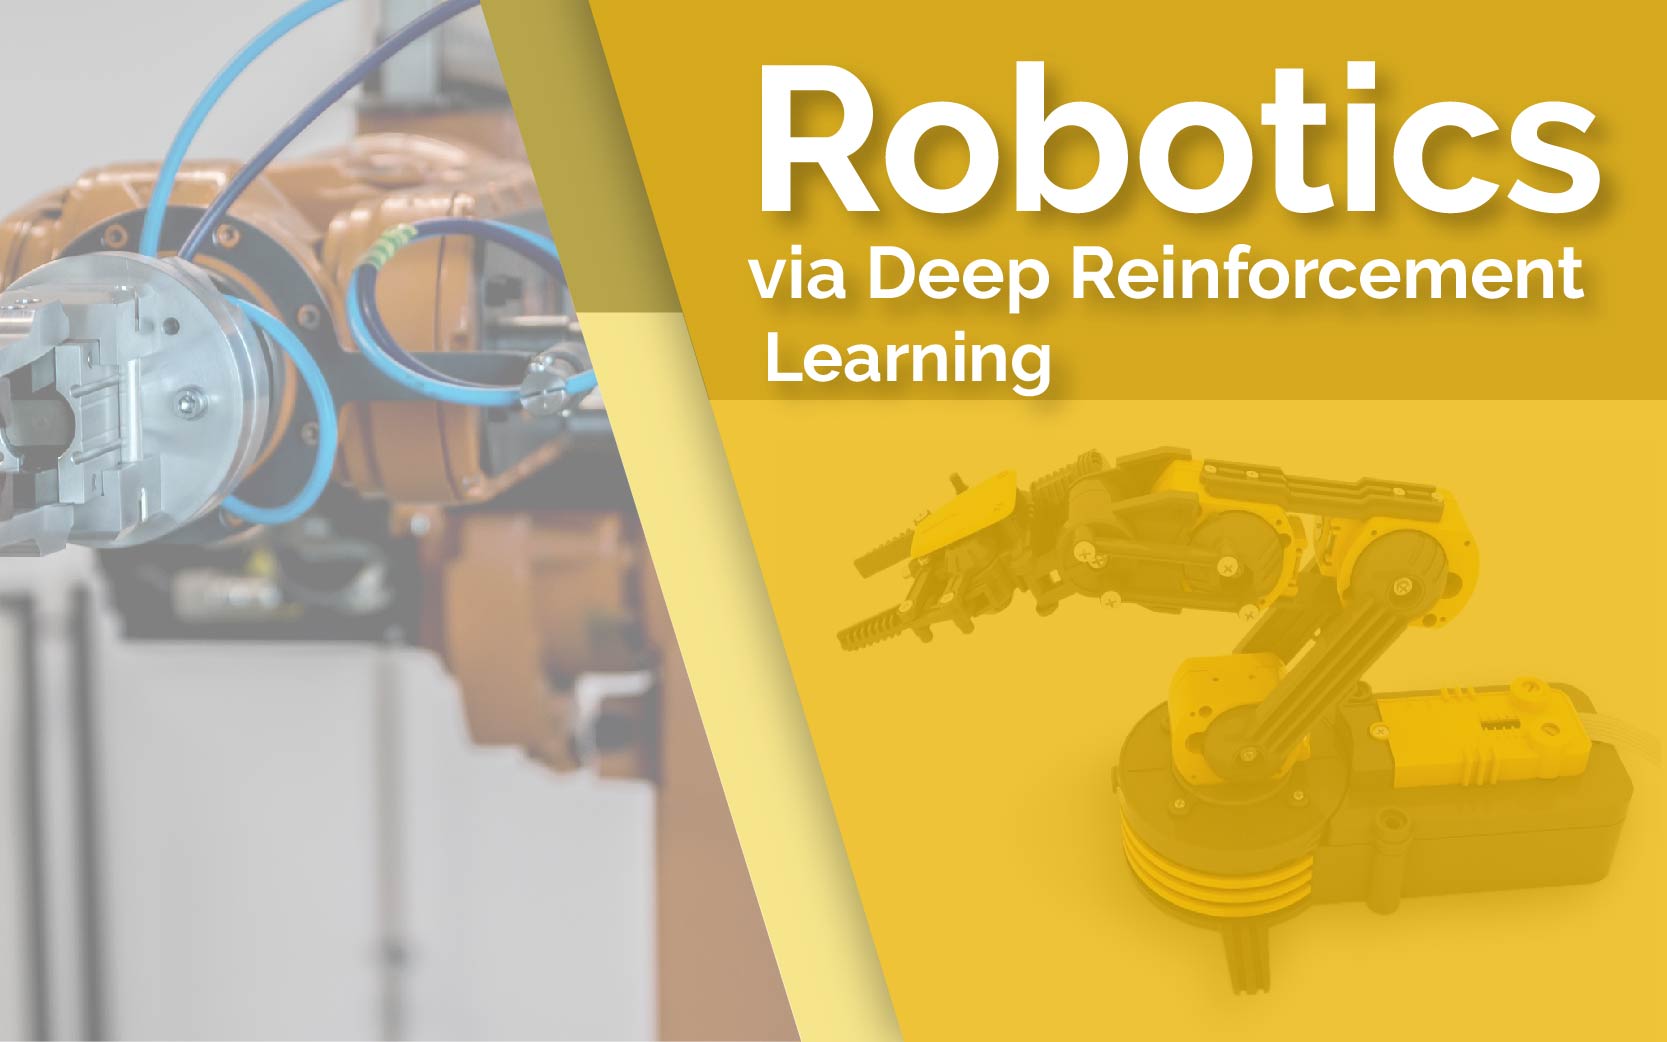 Robotics using Deep Reinforcement Learning